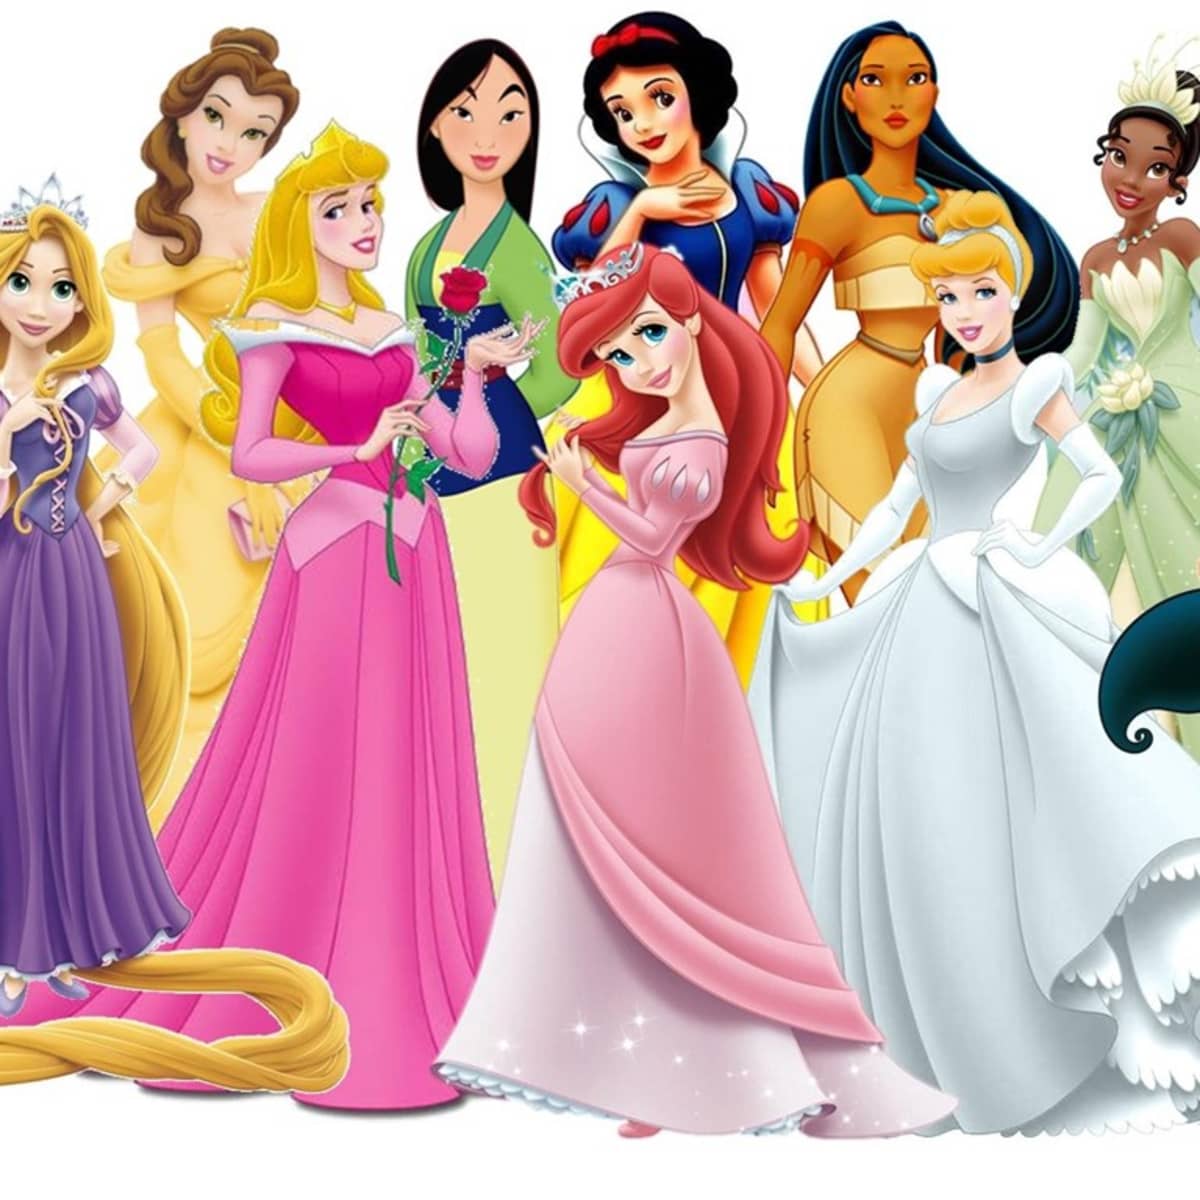 Do Disney Princesses Send the Wrong Messages?